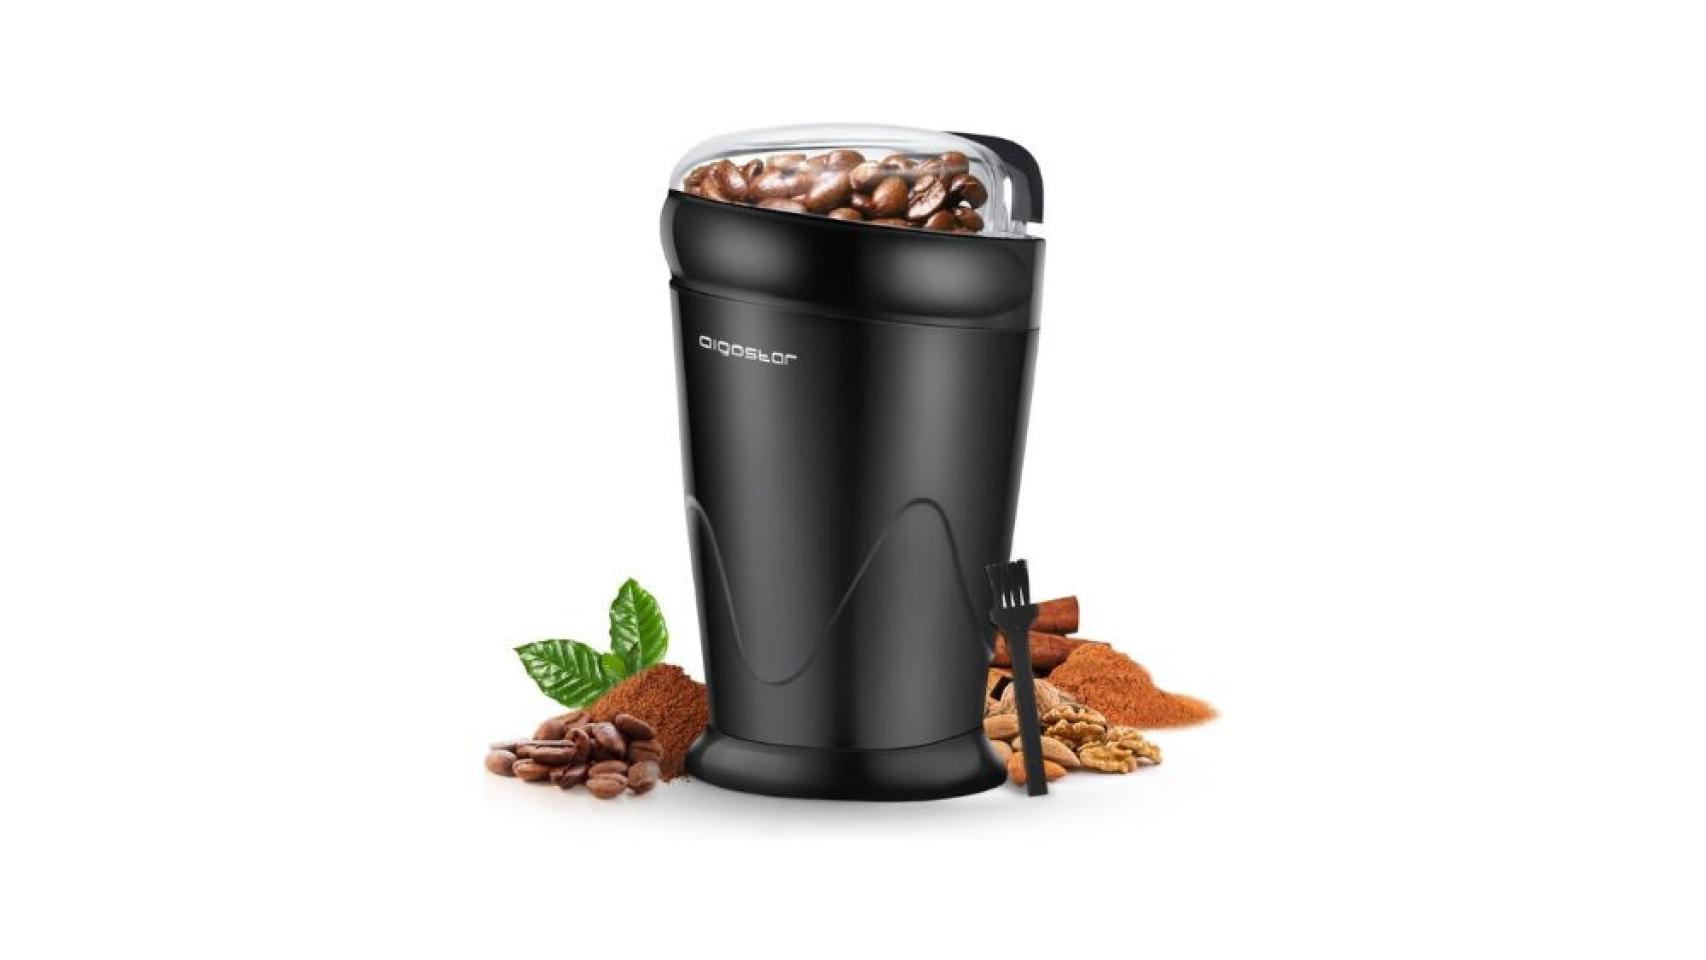 ▷ Chollo Molinillo de café eléctrico con batería recargable por sólo 16,33€  con envío gratis (-64%)